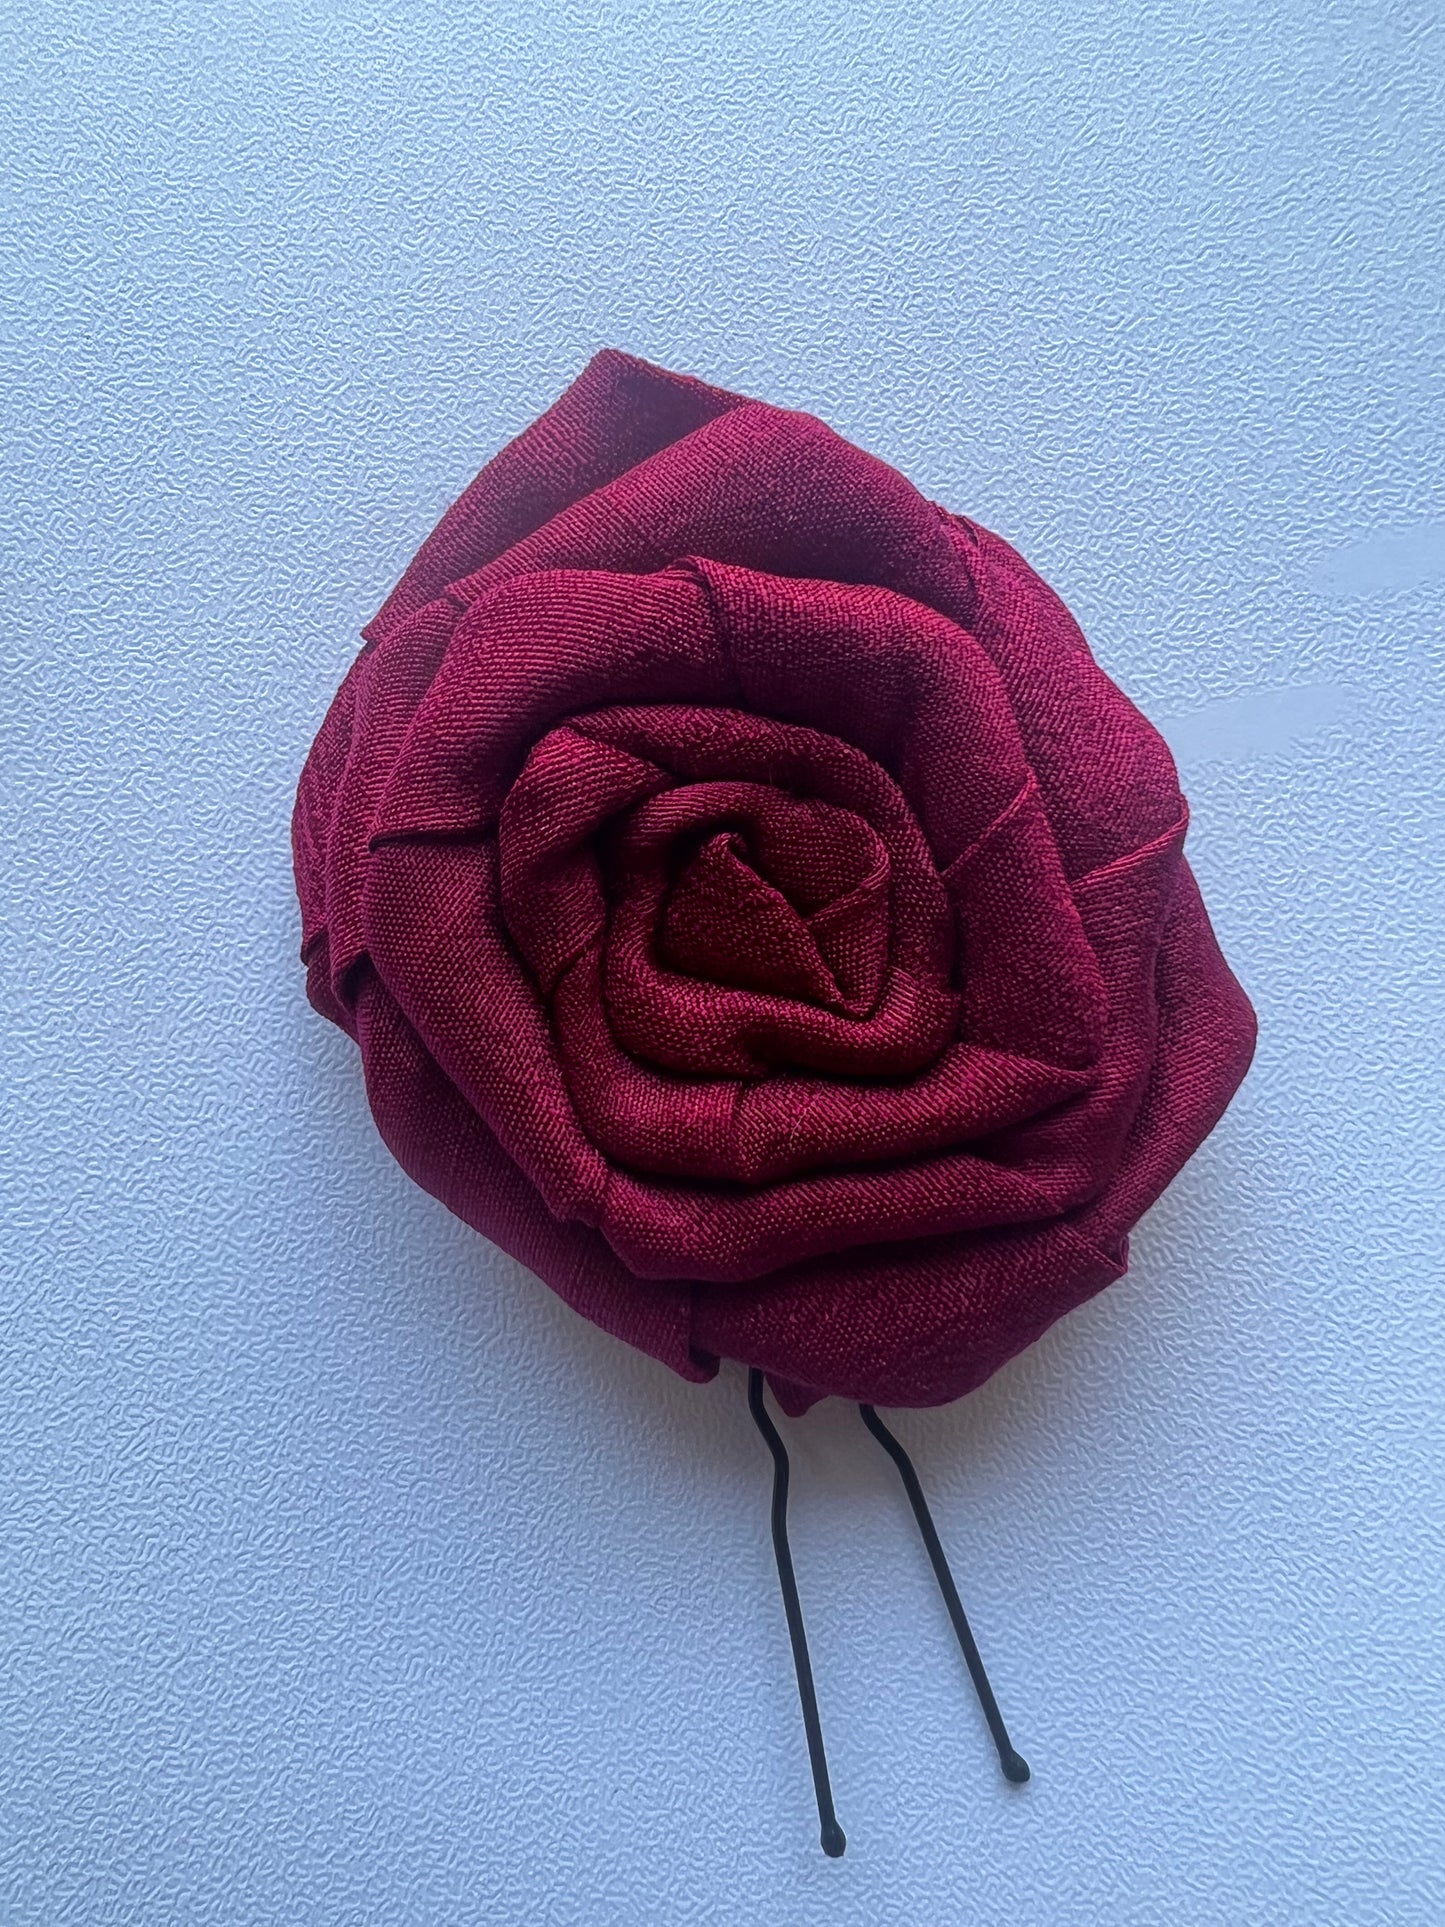 handmade-rose-u-pin-red